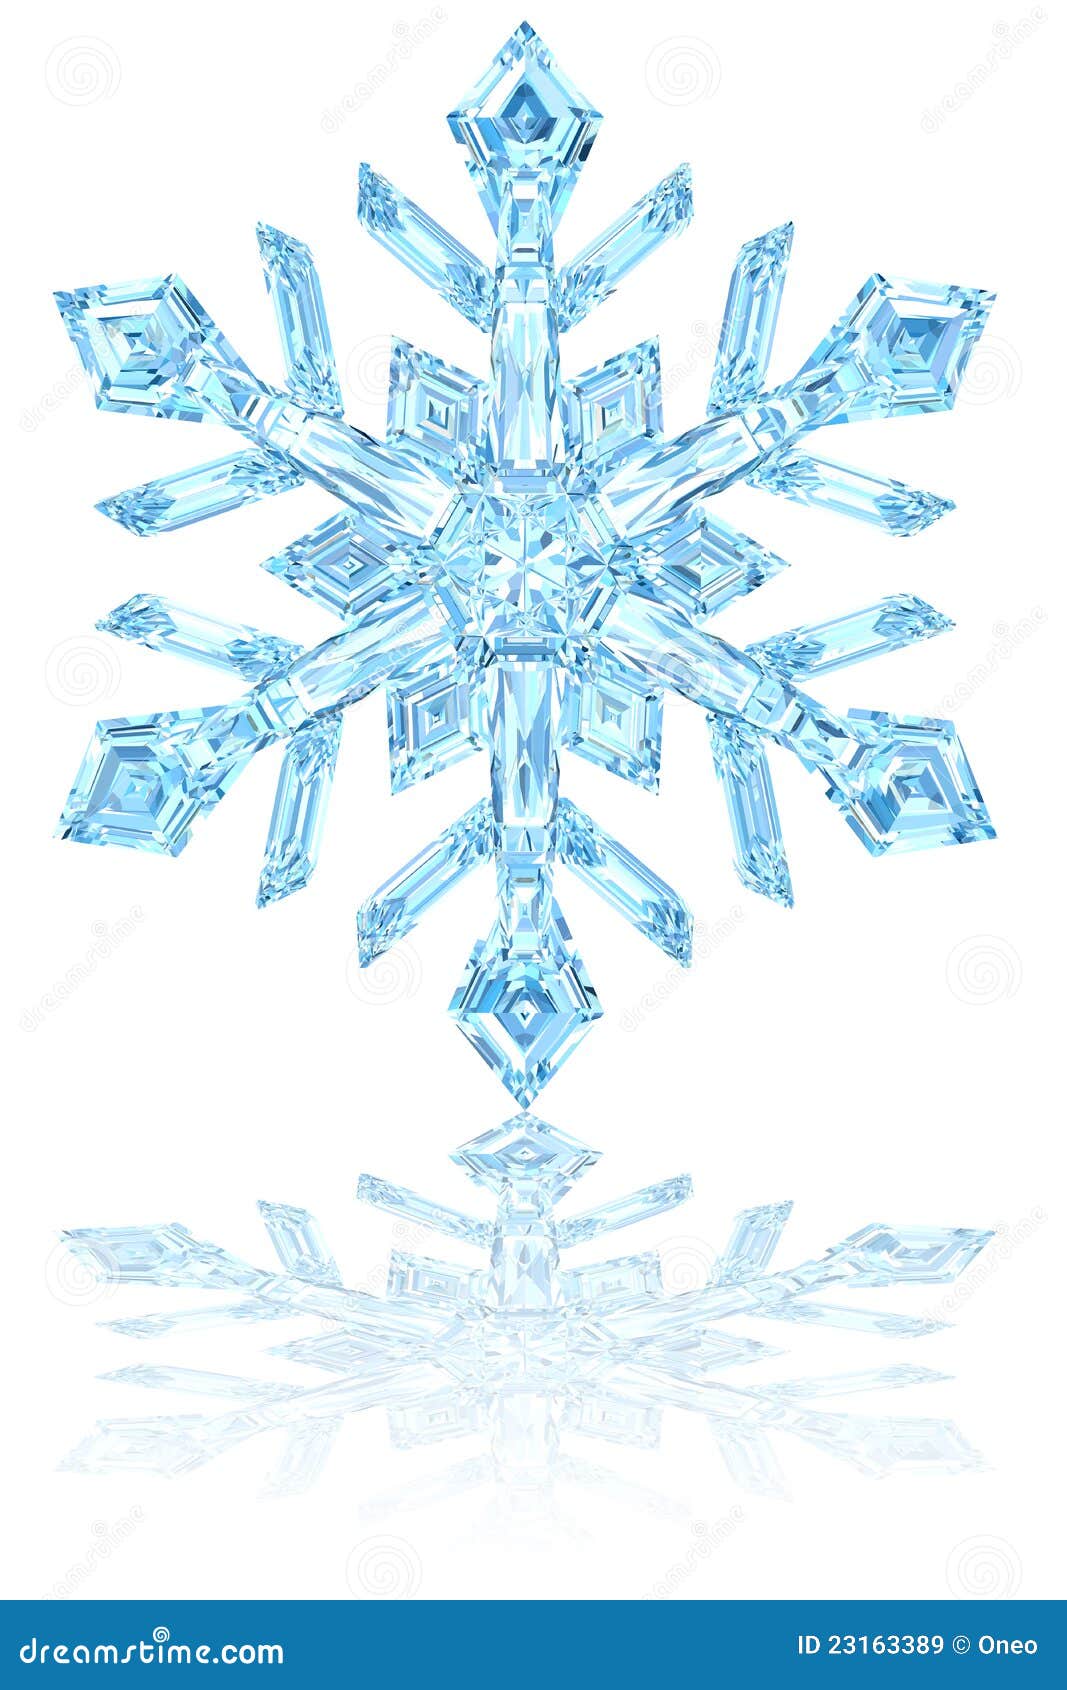 ... de regalÃ­as: Copo de nieve cristalino azul claro en blanco brillante